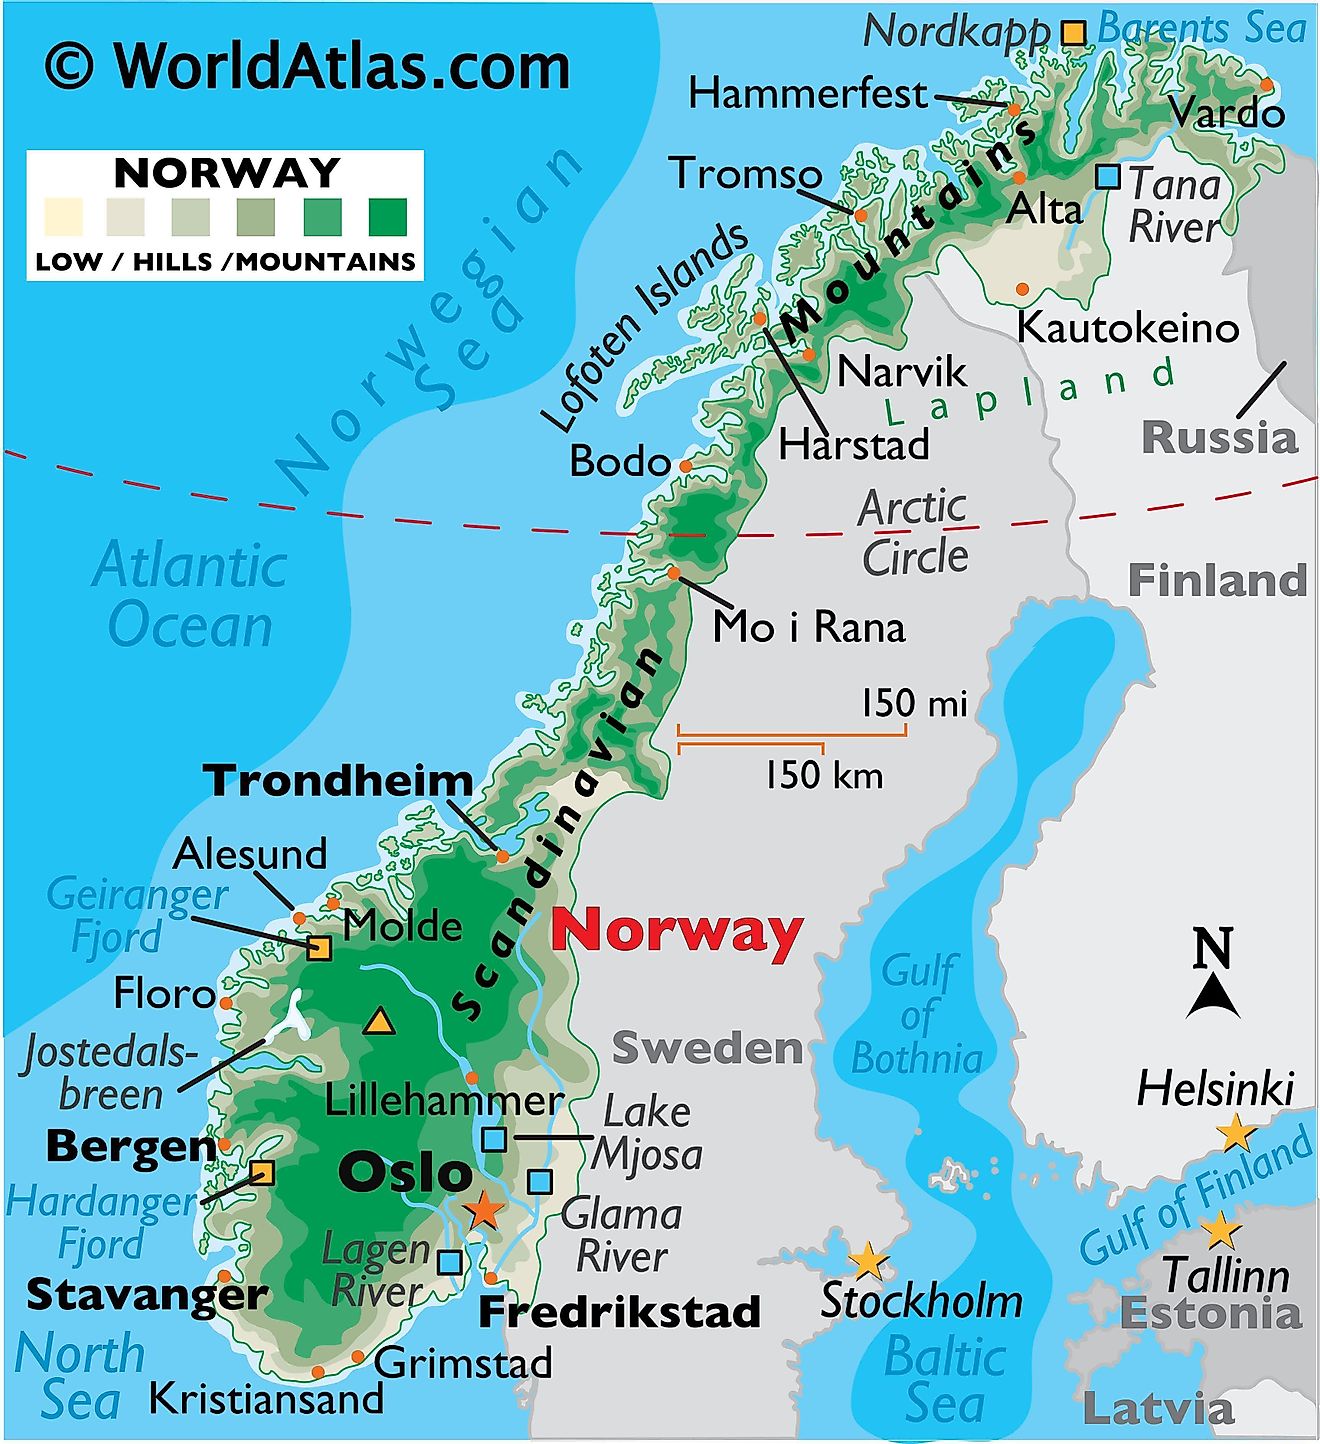 Mapa físico de Noruega que muestra el relieve, las fronteras internacionales, los principales ríos, cadenas montañosas, puntos extremos, ciudades importantes, islas, etc.